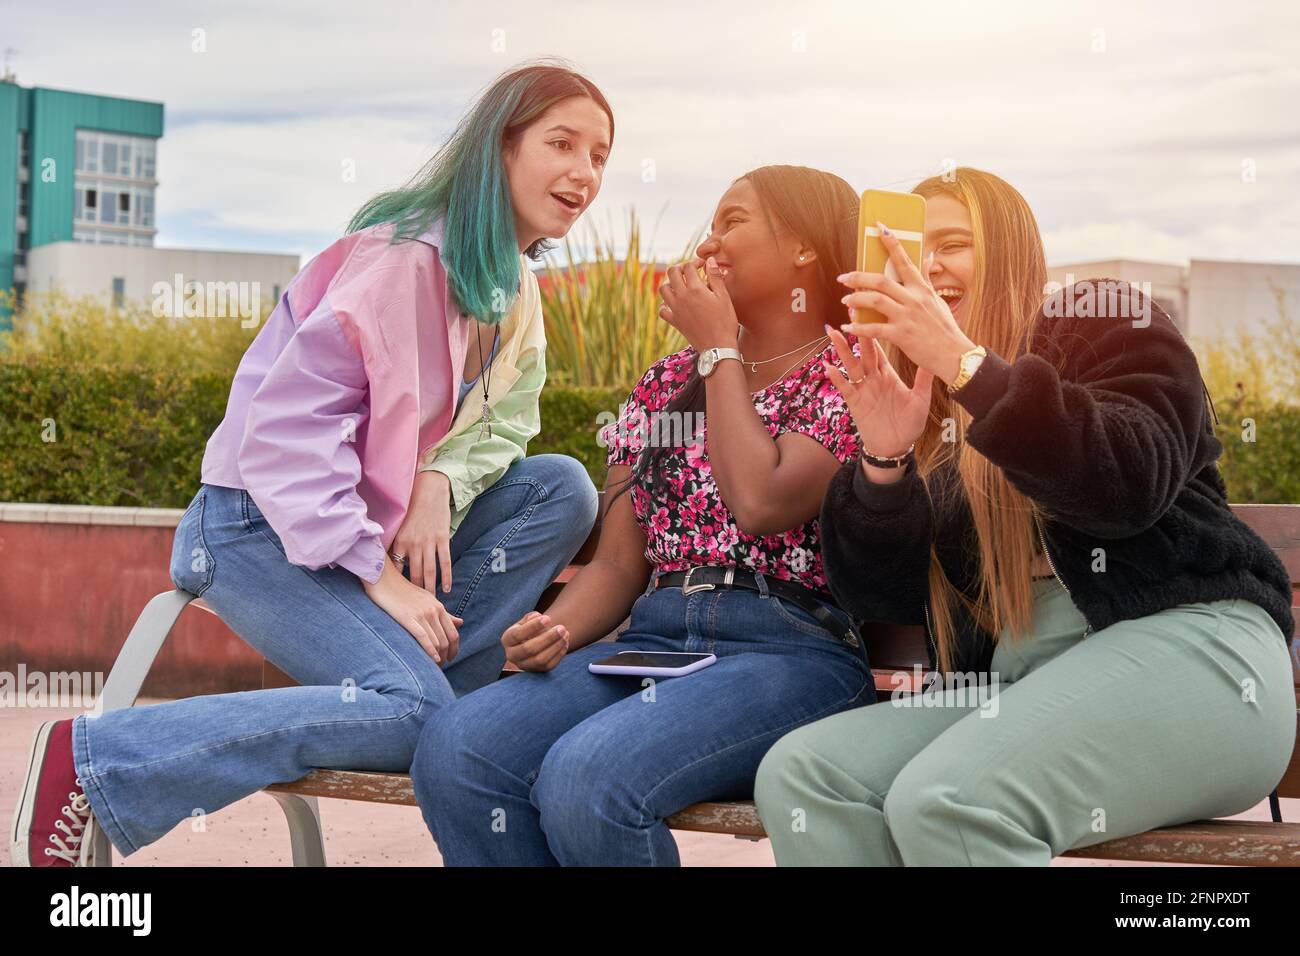 Las chicas se divierten viendo algo en el smartphone de su amigo Fotografía  de stock - Alamy